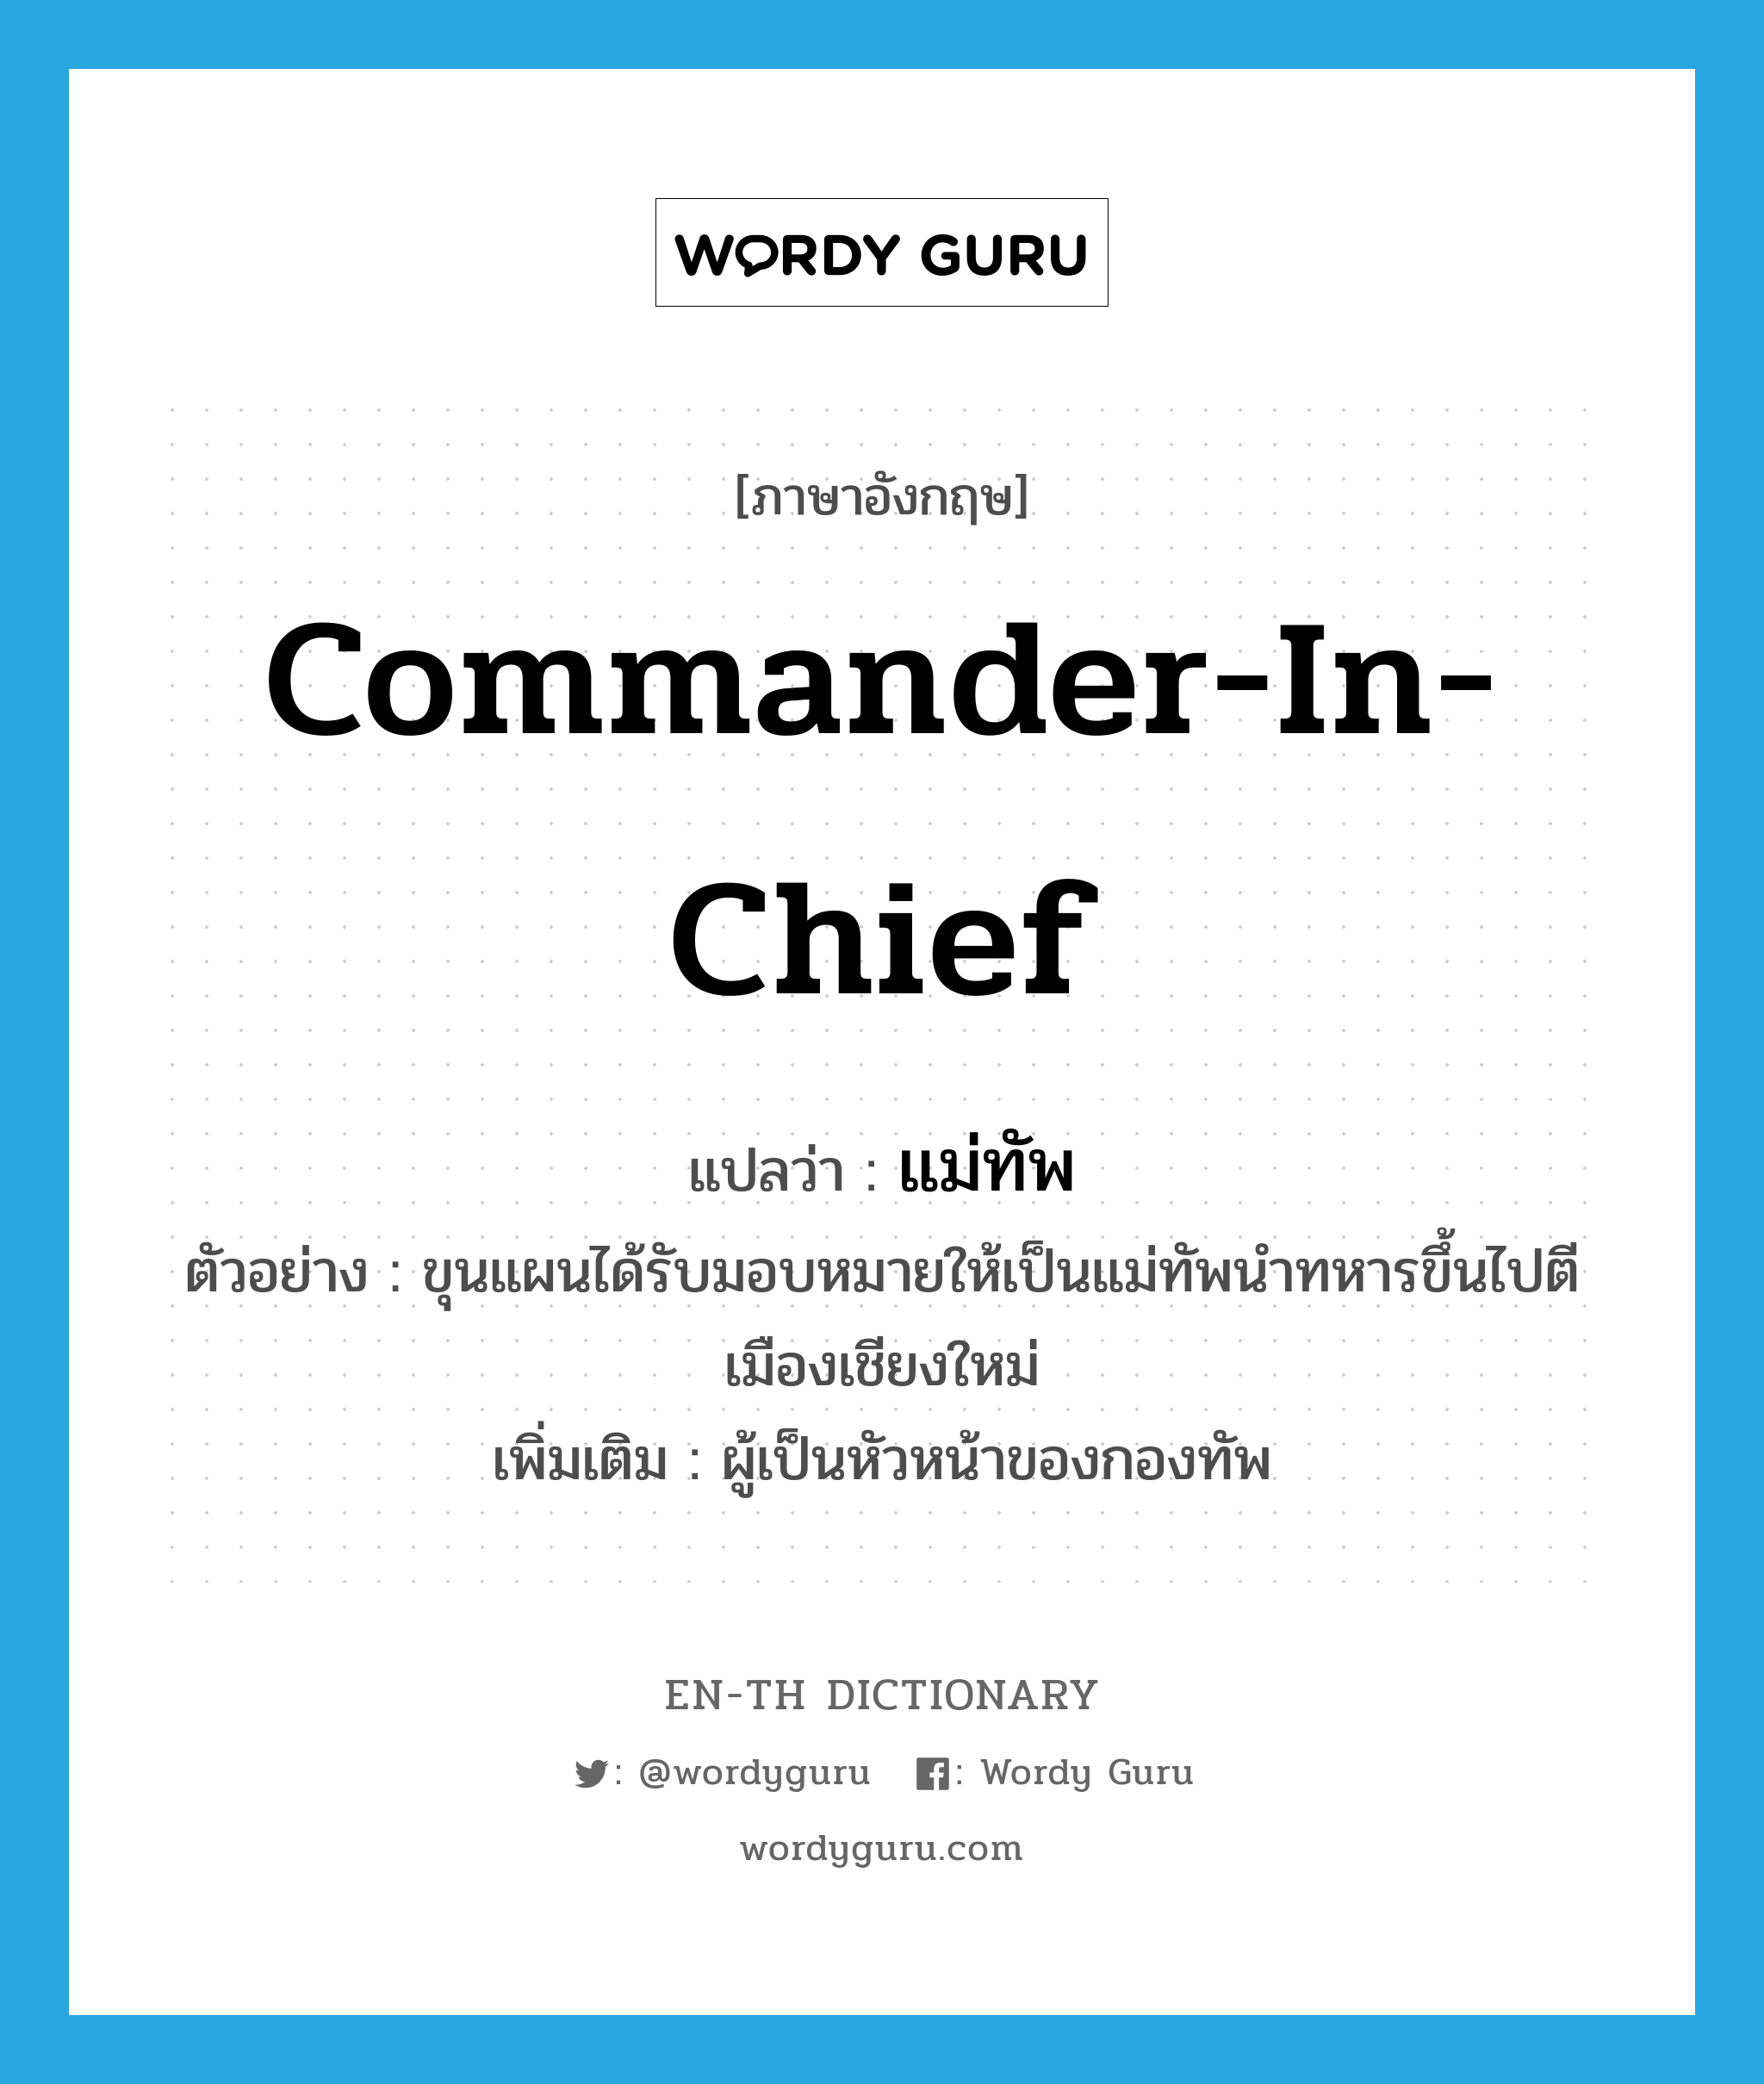 แม่ทัพ ภาษาอังกฤษ?, คำศัพท์ภาษาอังกฤษ แม่ทัพ แปลว่า commander-in-chief ประเภท N ตัวอย่าง ขุนแผนได้รับมอบหมายให้เป็นแม่ทัพนำทหารขึ้นไปตีเมืองเชียงใหม่ เพิ่มเติม ผู้เป็นหัวหน้าของกองทัพ หมวด N